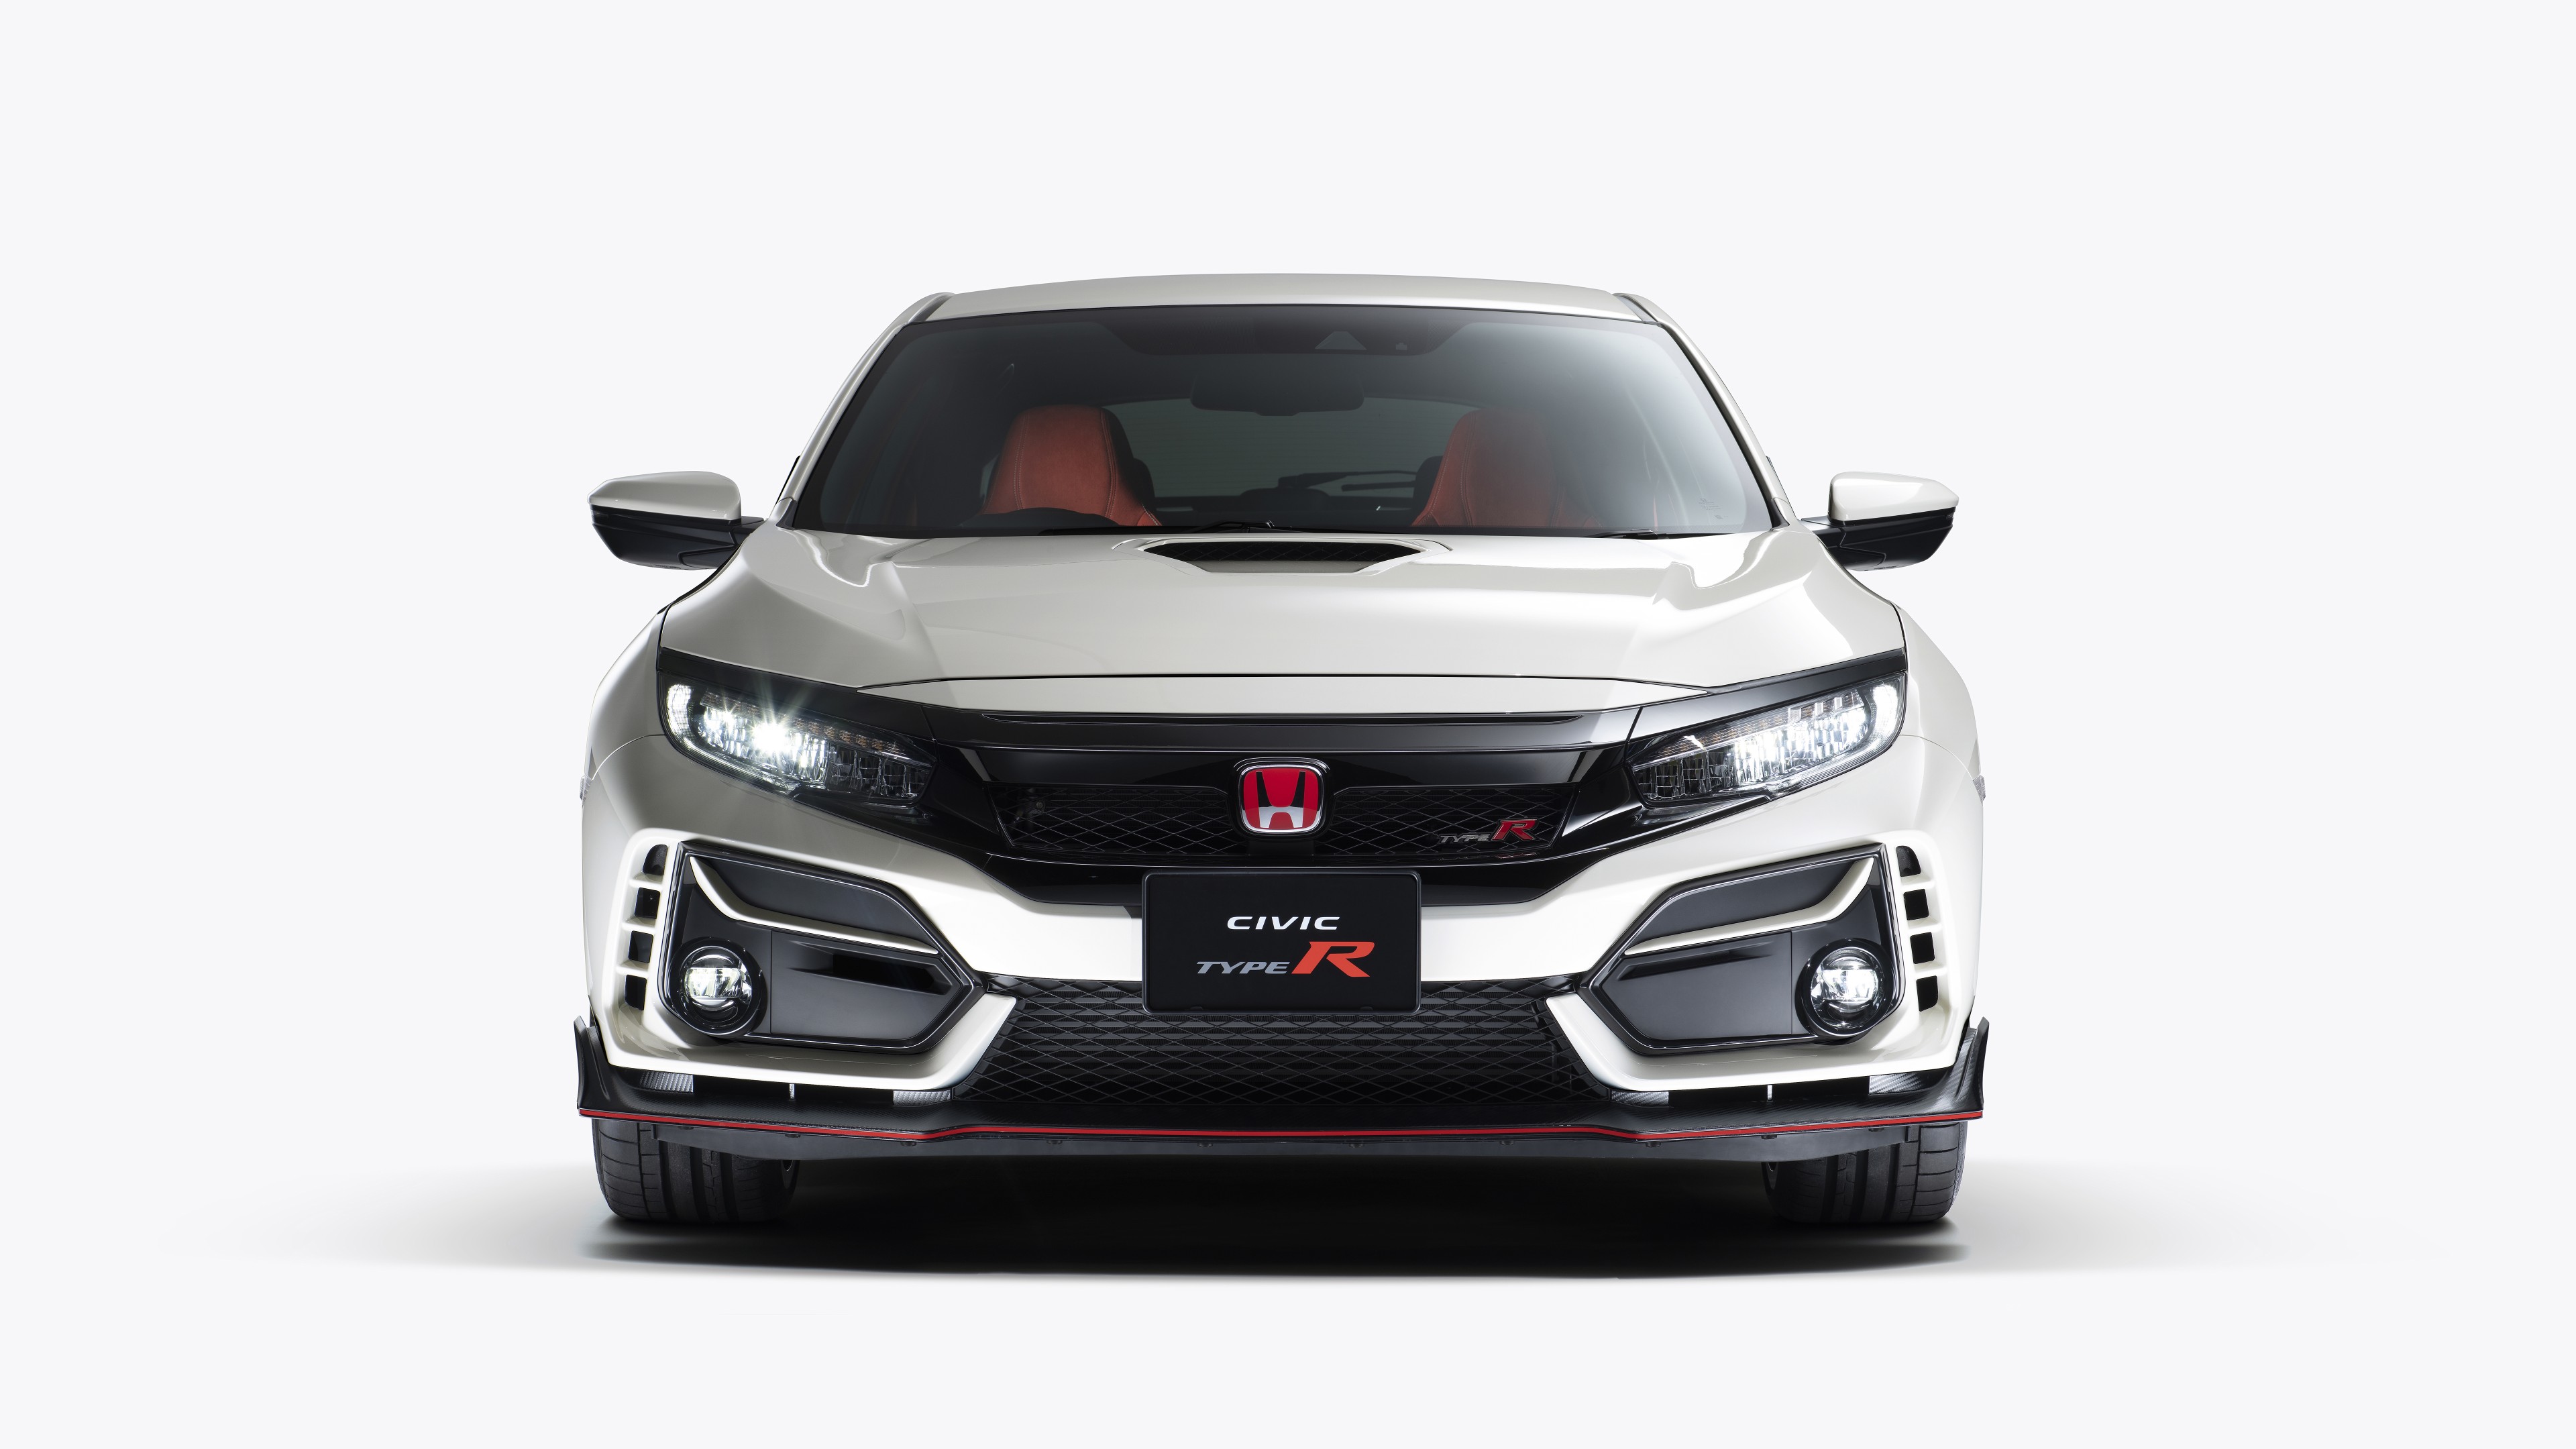 Honda Civic Type R 2020 4K 8K Wallpaper - HD Car Wallpapers #14151